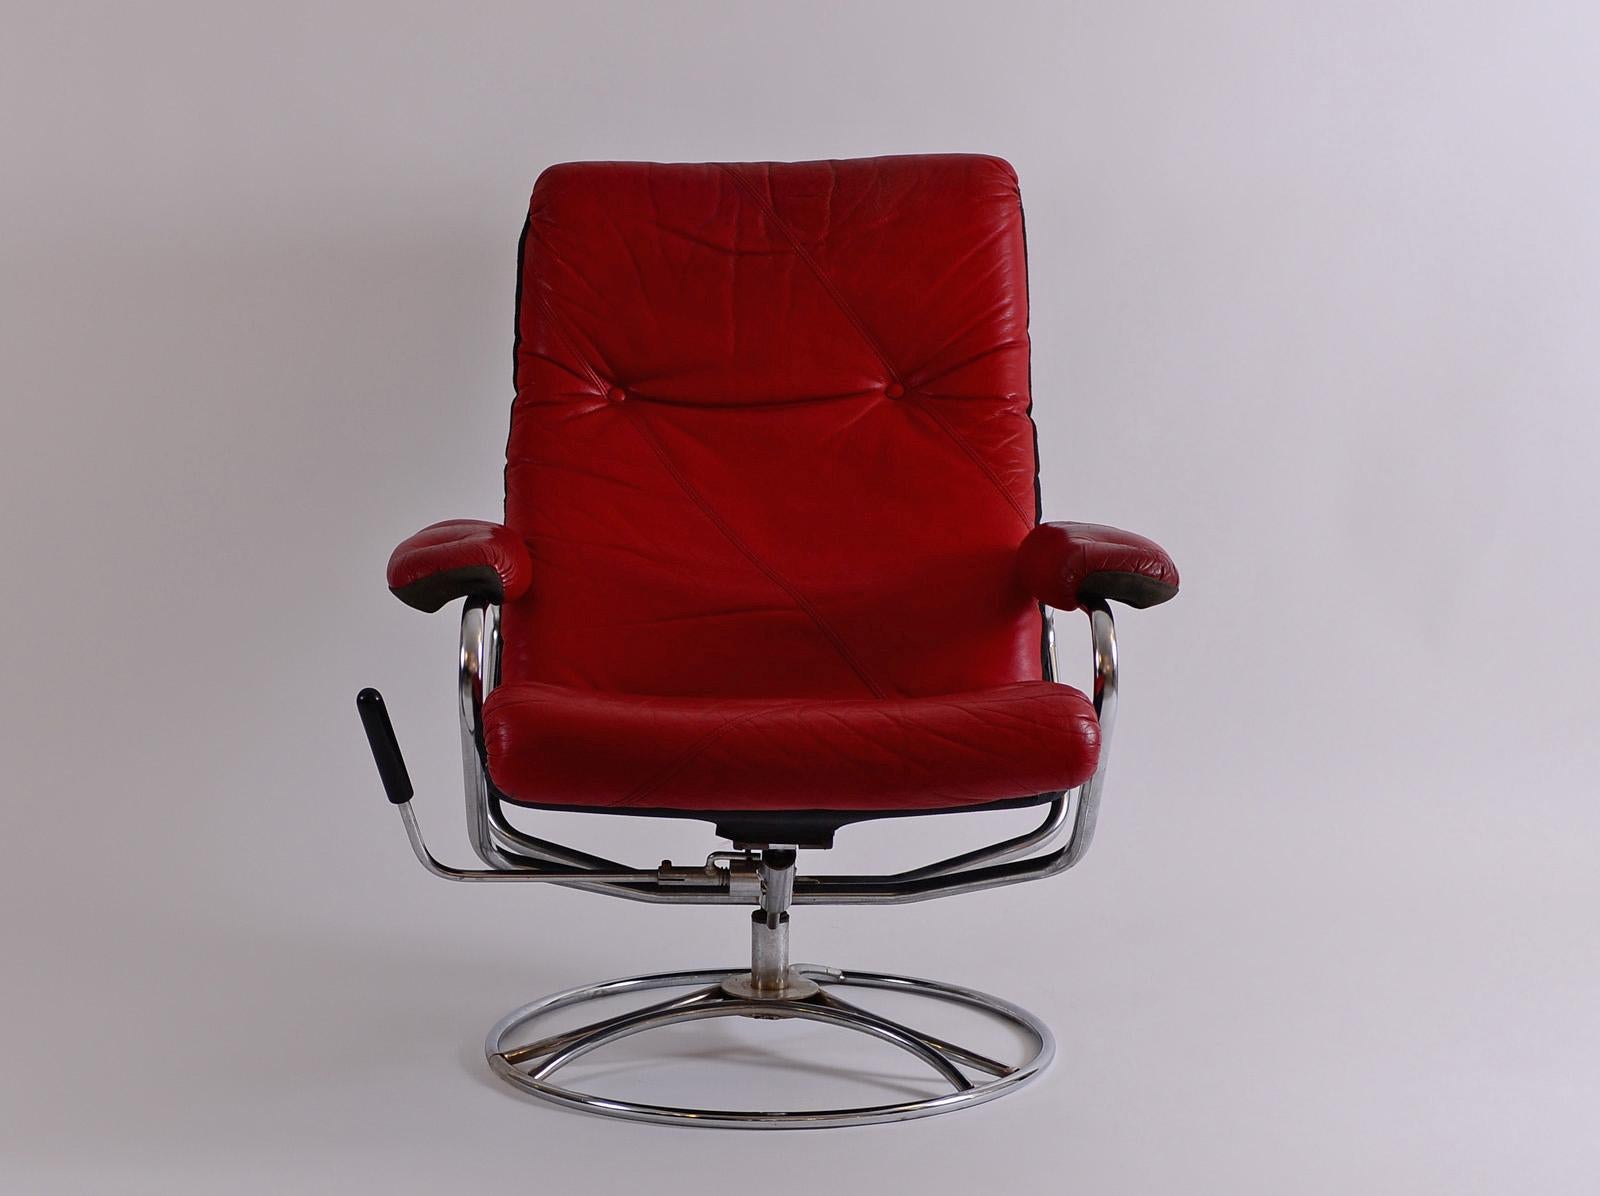 Drehbarer und drehbarer Loungesessel, sehr bequem. Vermutlich ein Vorgänger des Ekornes Stressless, der ab 1971 in Norwegen gebaut wurde. Der Stuhl ist um 360 Grad drehbar. Der Stuhl lässt sich von einer aufrechten Sitzposition bis fast in die